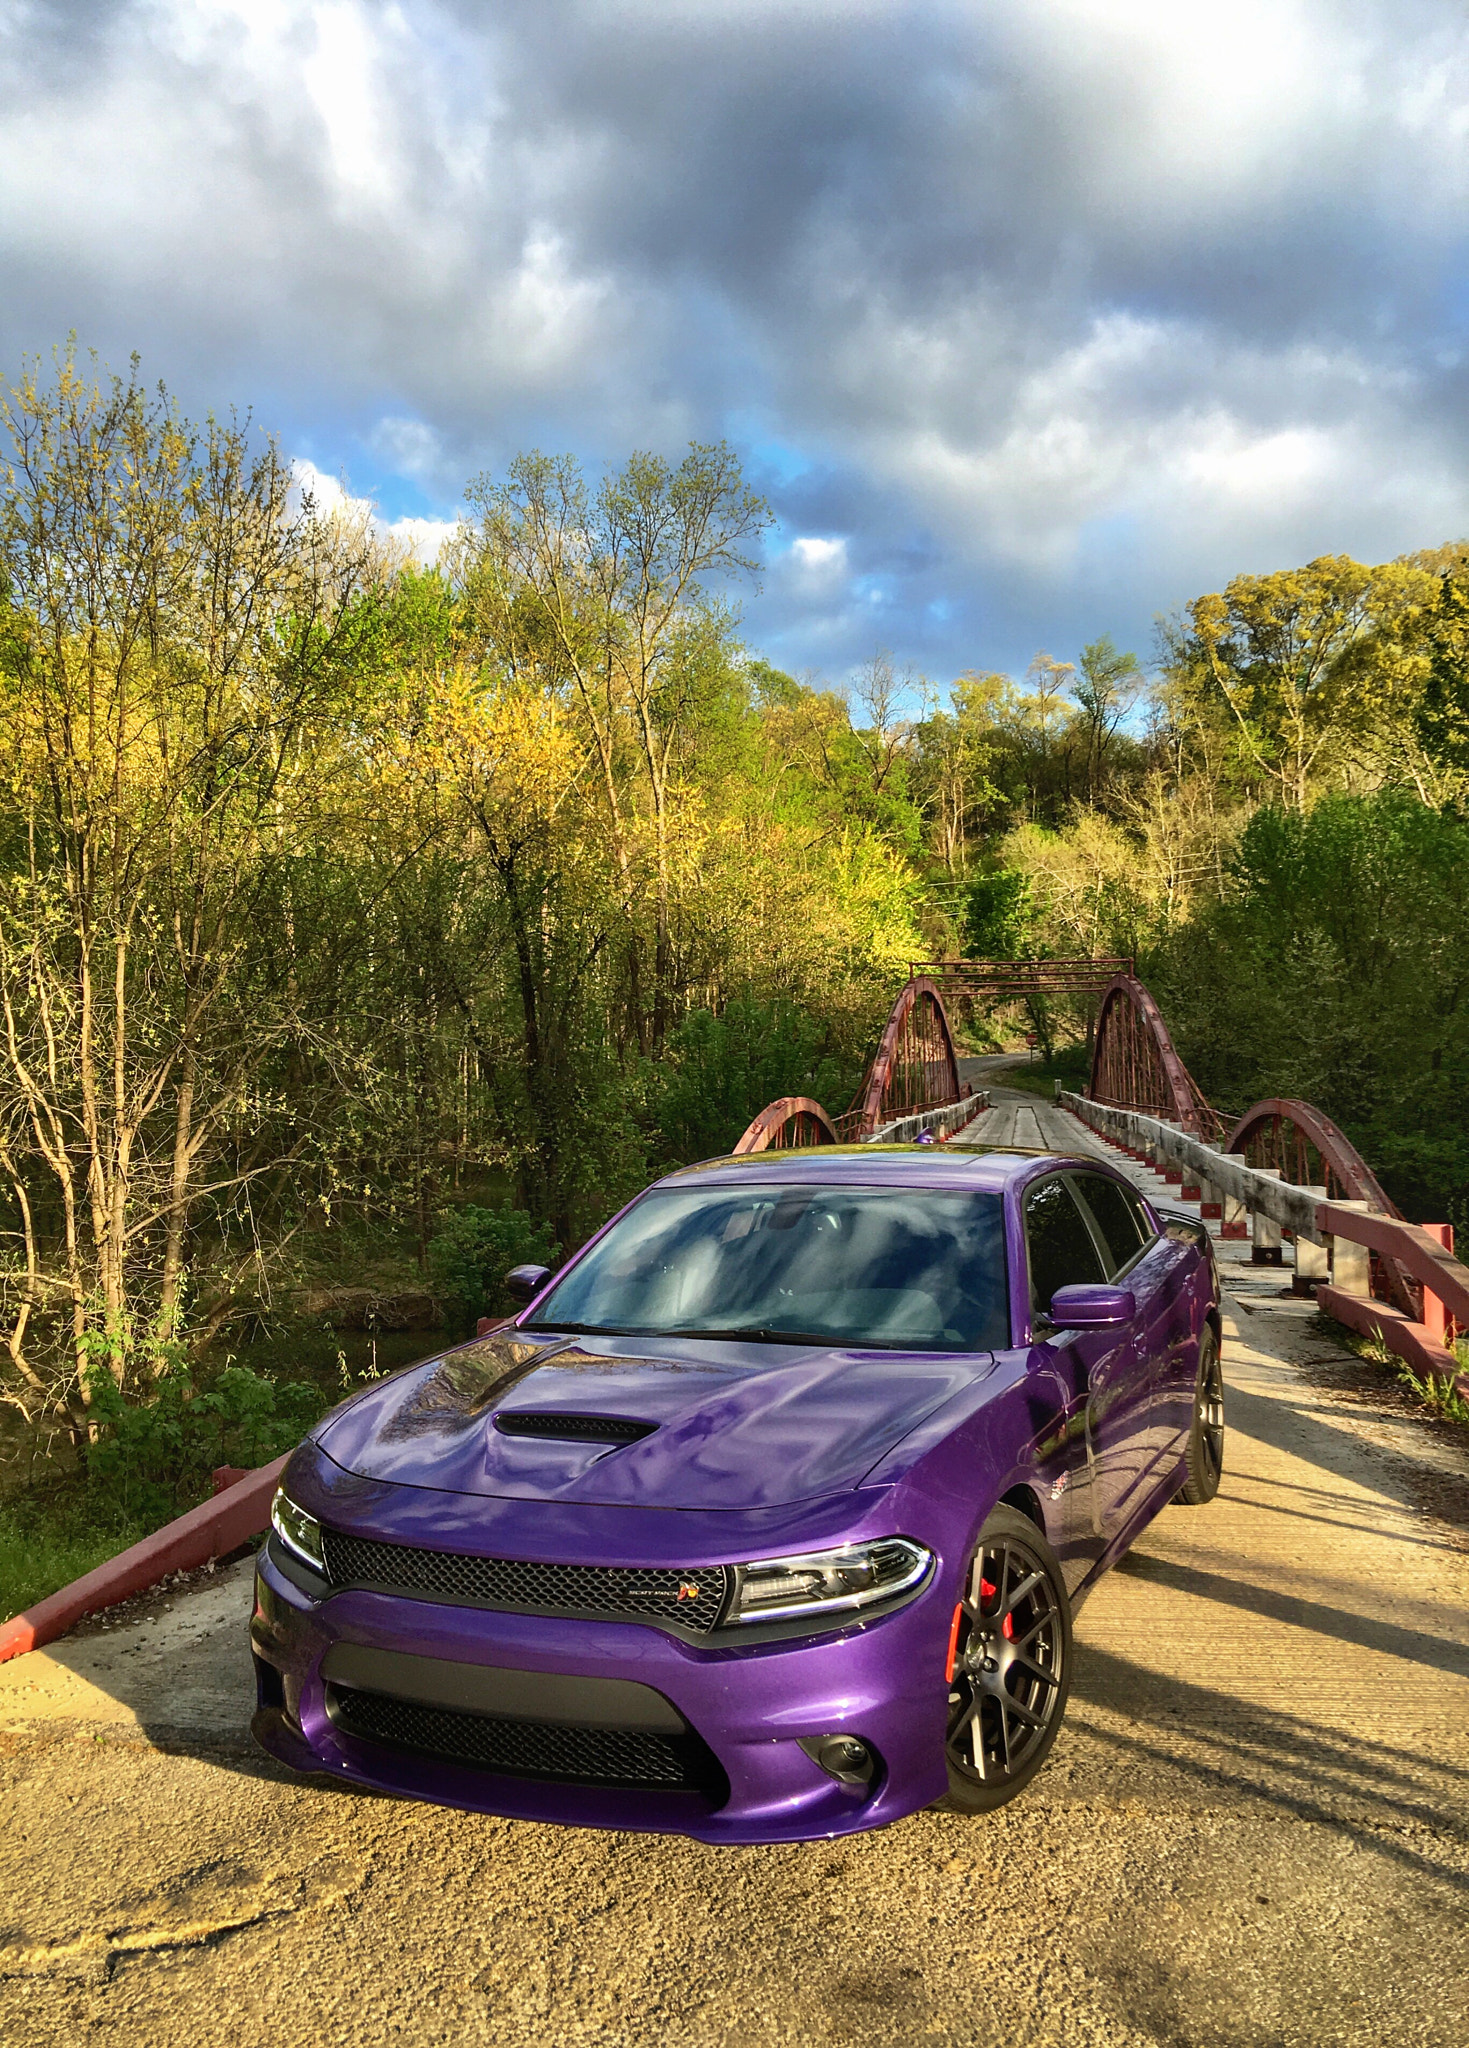 2016 Dodge Charger ScatPack in Plum Crazy Purple at Boner Bridge